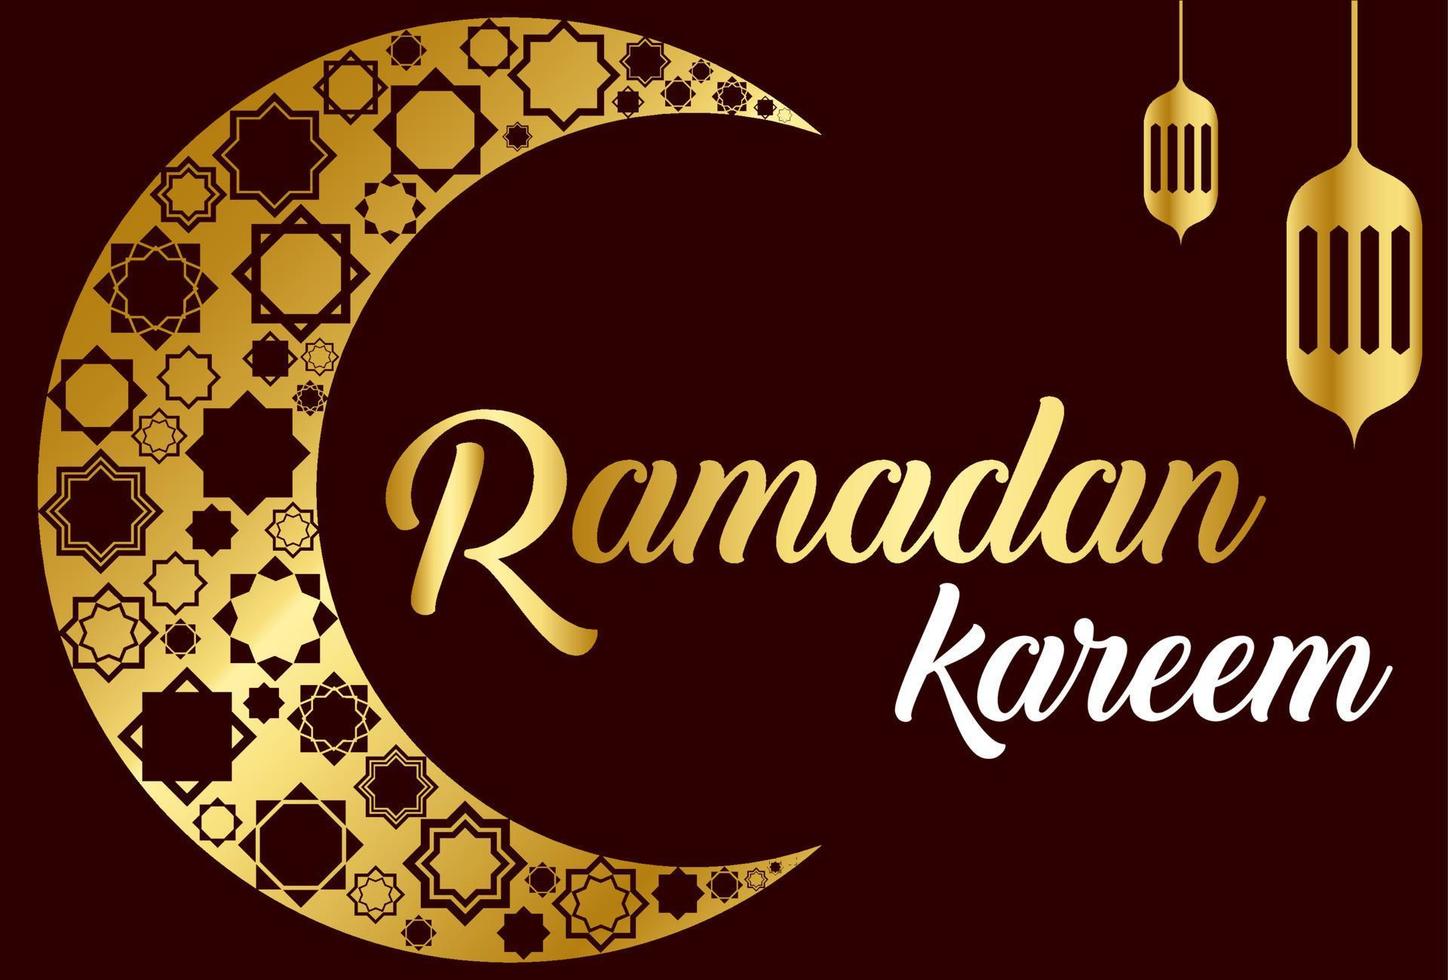 ramadan kareem fond islamique mois sacré pour les musulmans vecteur